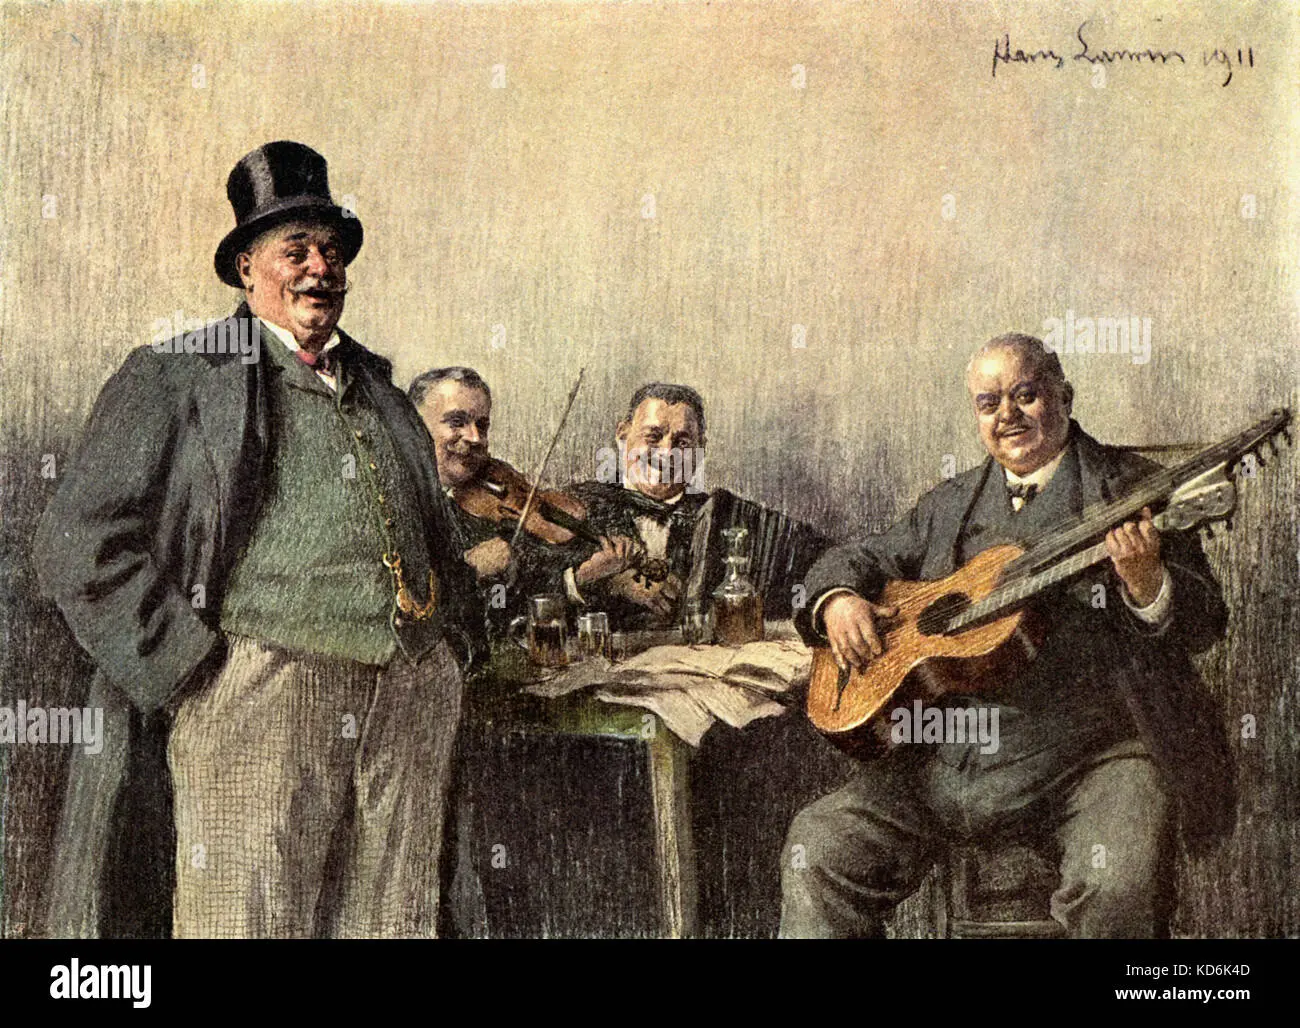 grupo aleman violin y acordeon - Cómo se llama la música tradicional alemana